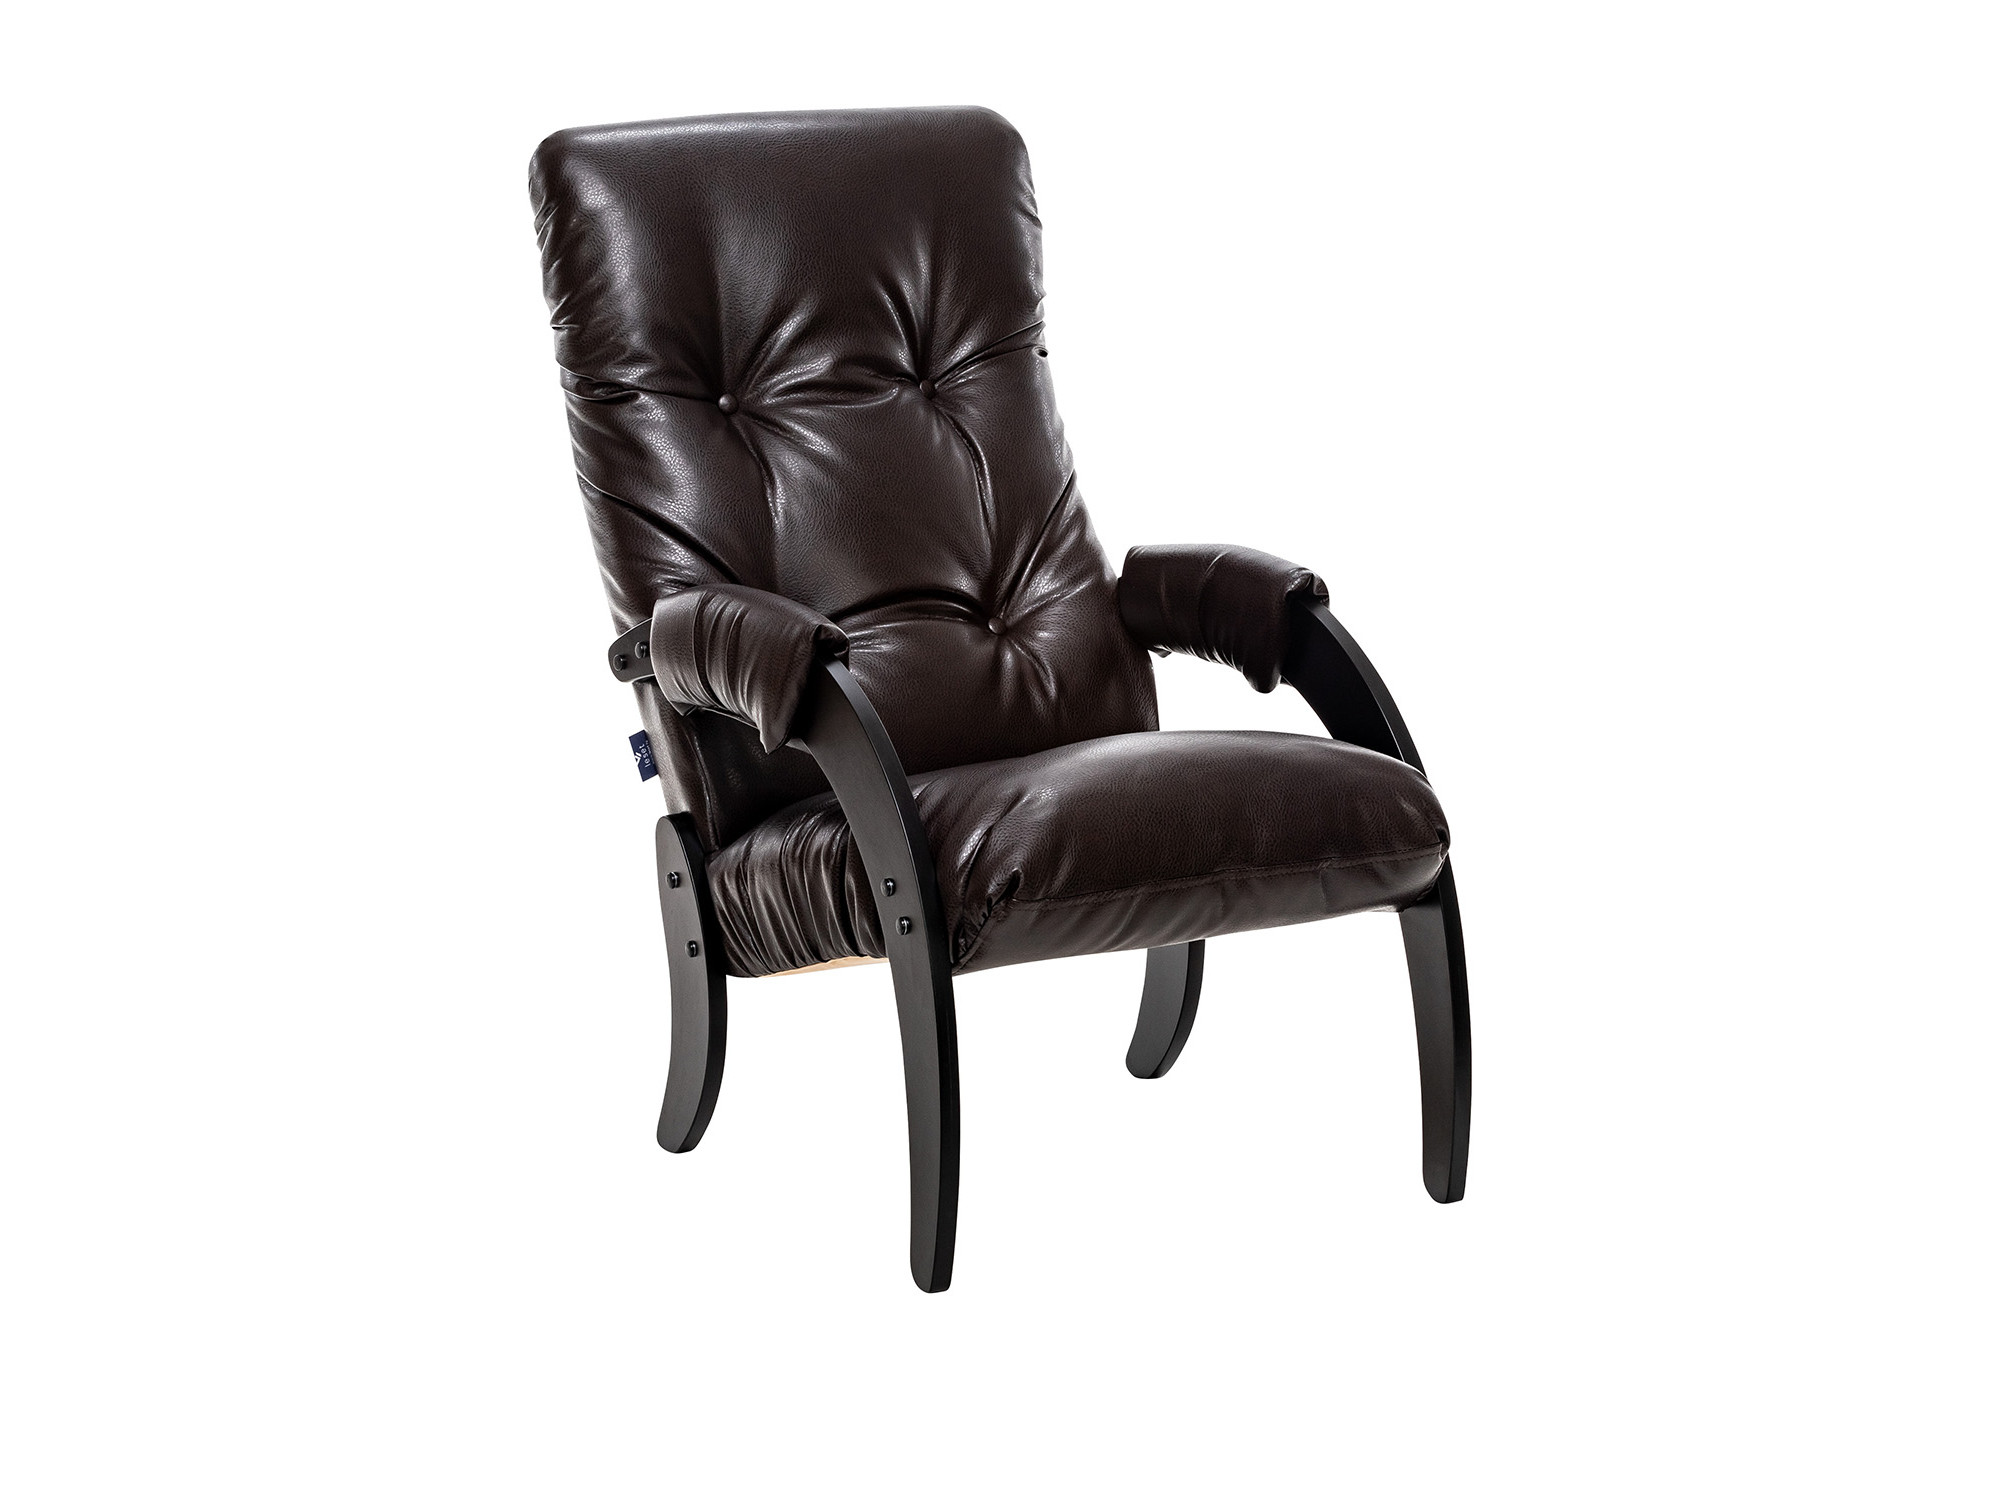 Кресло для отдыха Модель 61 Венге текстура, к/з Varana DK-BROWN MebelVia Varan кресло качалка модель 68 leset футура дуб беленый к з varana cappuccino mebelvia